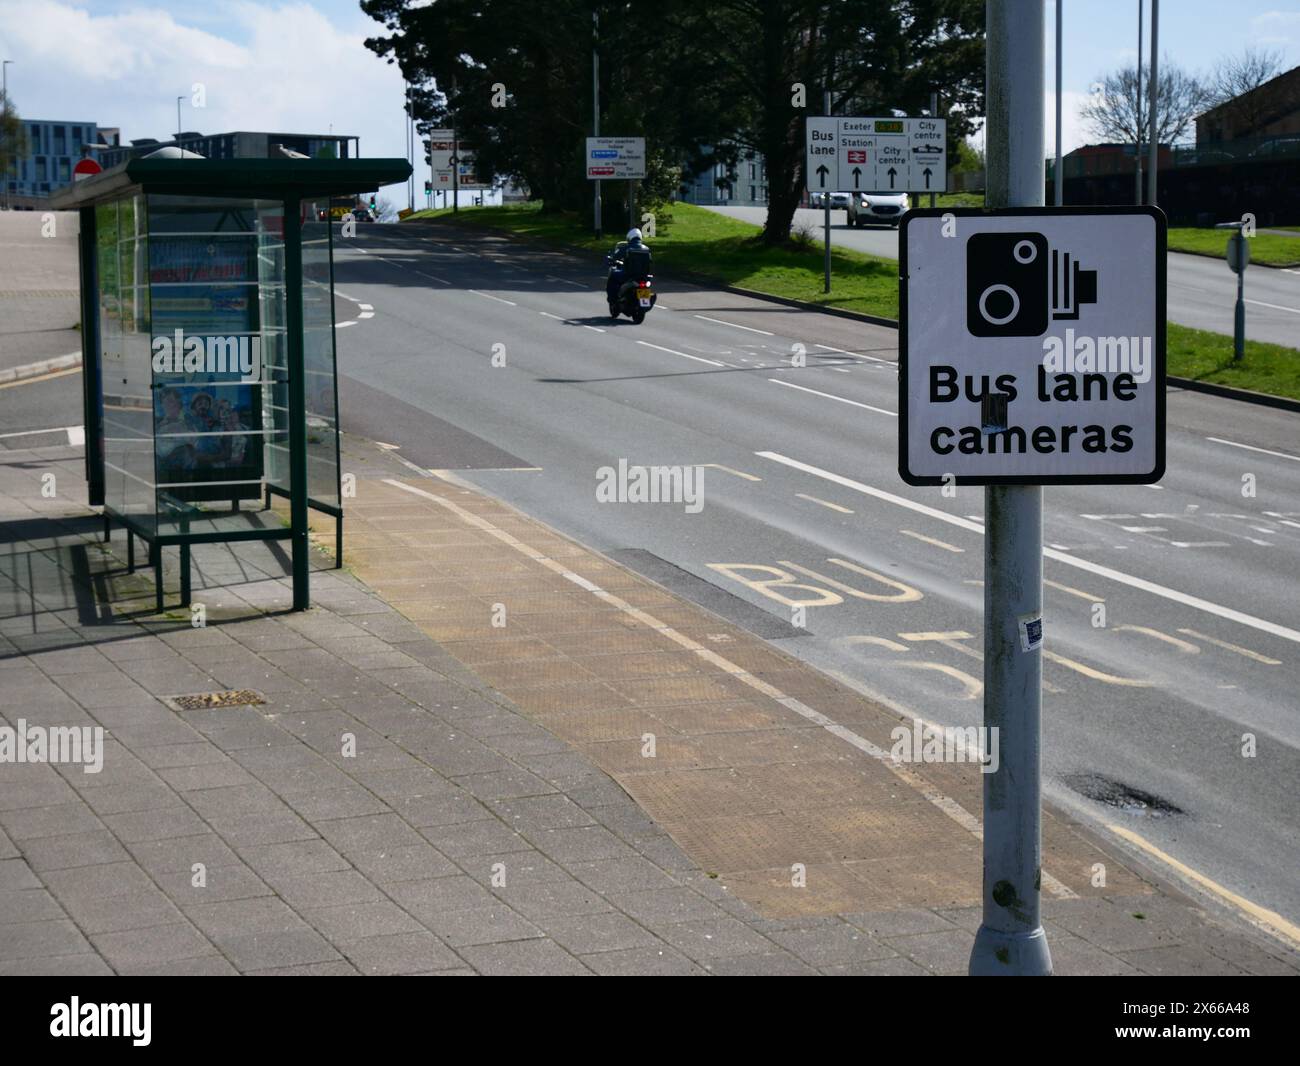 Corsia degli autobus sulla strada della città con cartelli indicanti che le telecamere della corsia degli autobus sono in uso. Plymouth, Regno Unito Foto Stock